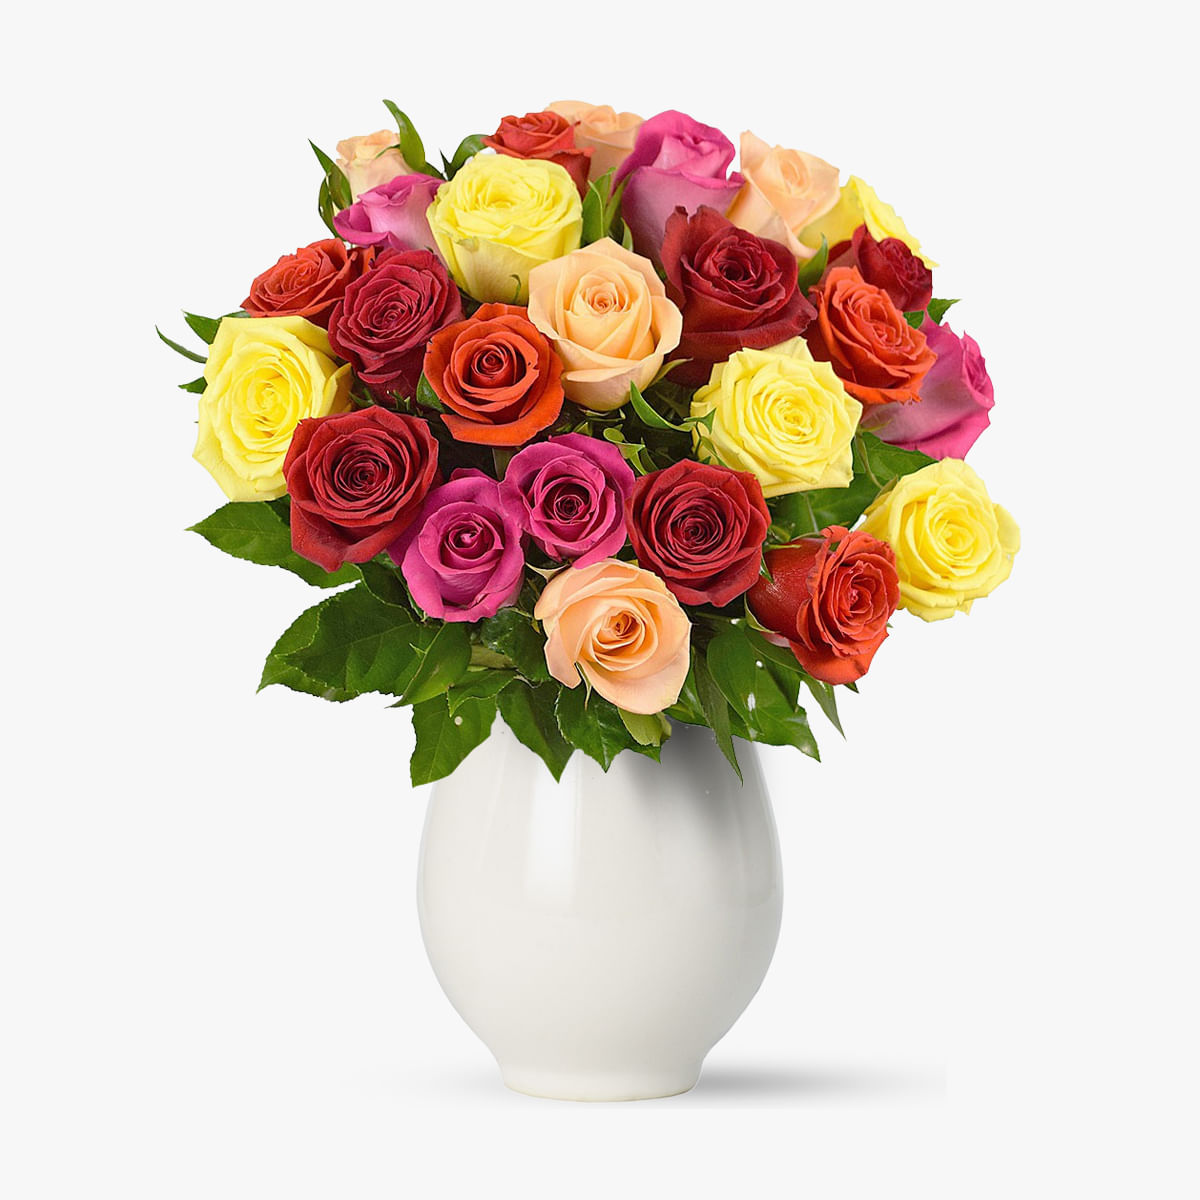 Buchet de 25 trandafiri multicolori – Standard